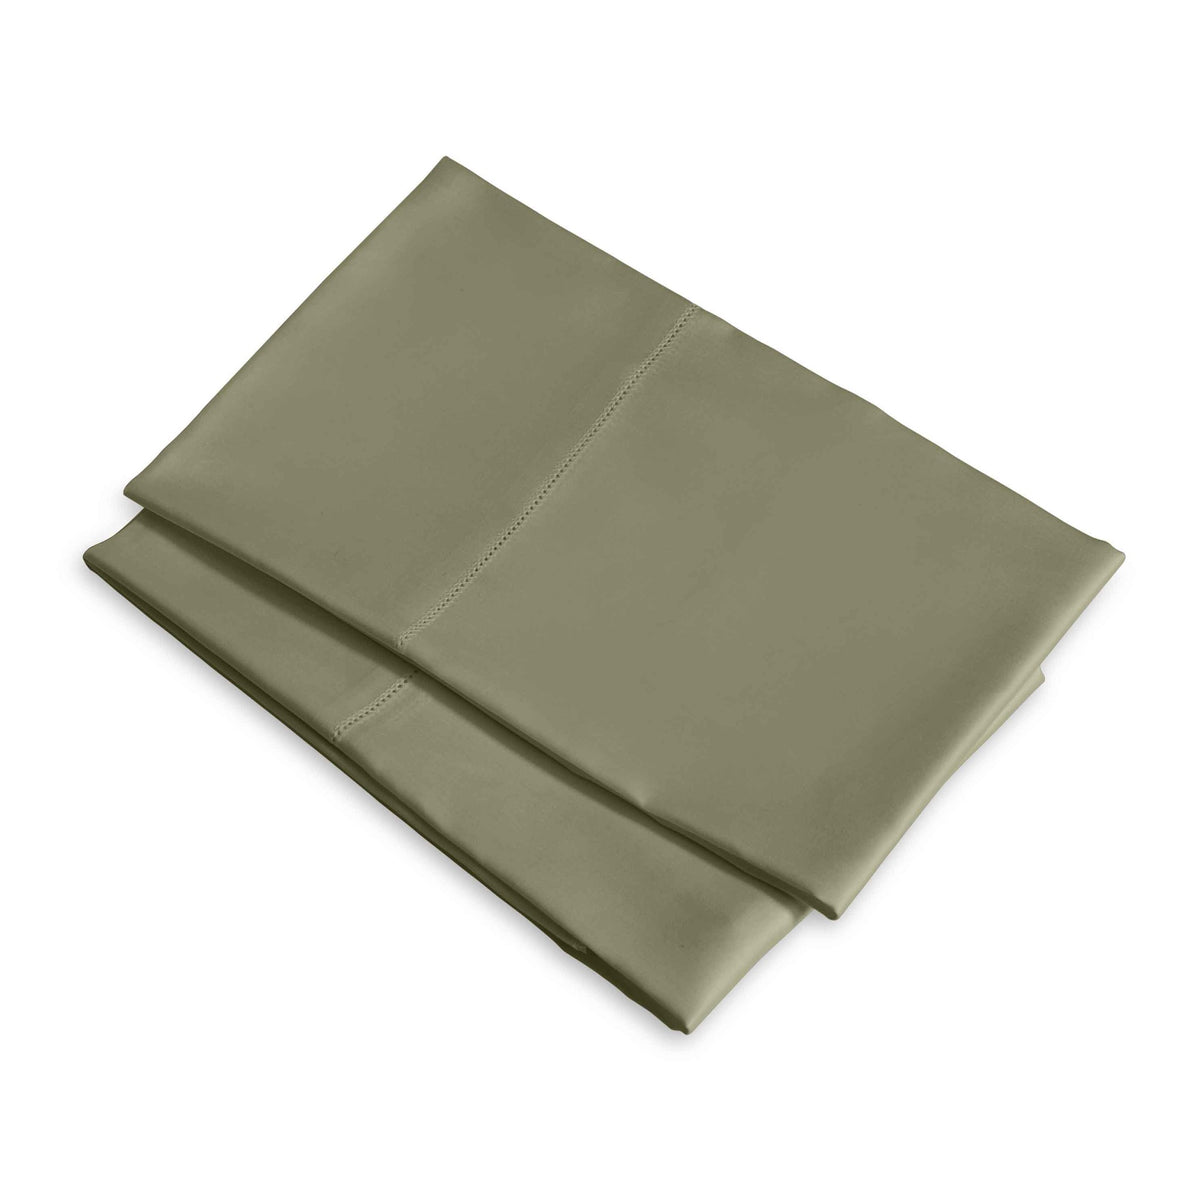 Clear Image of Signoria Raffaello Pillowcases in Olive Green Color